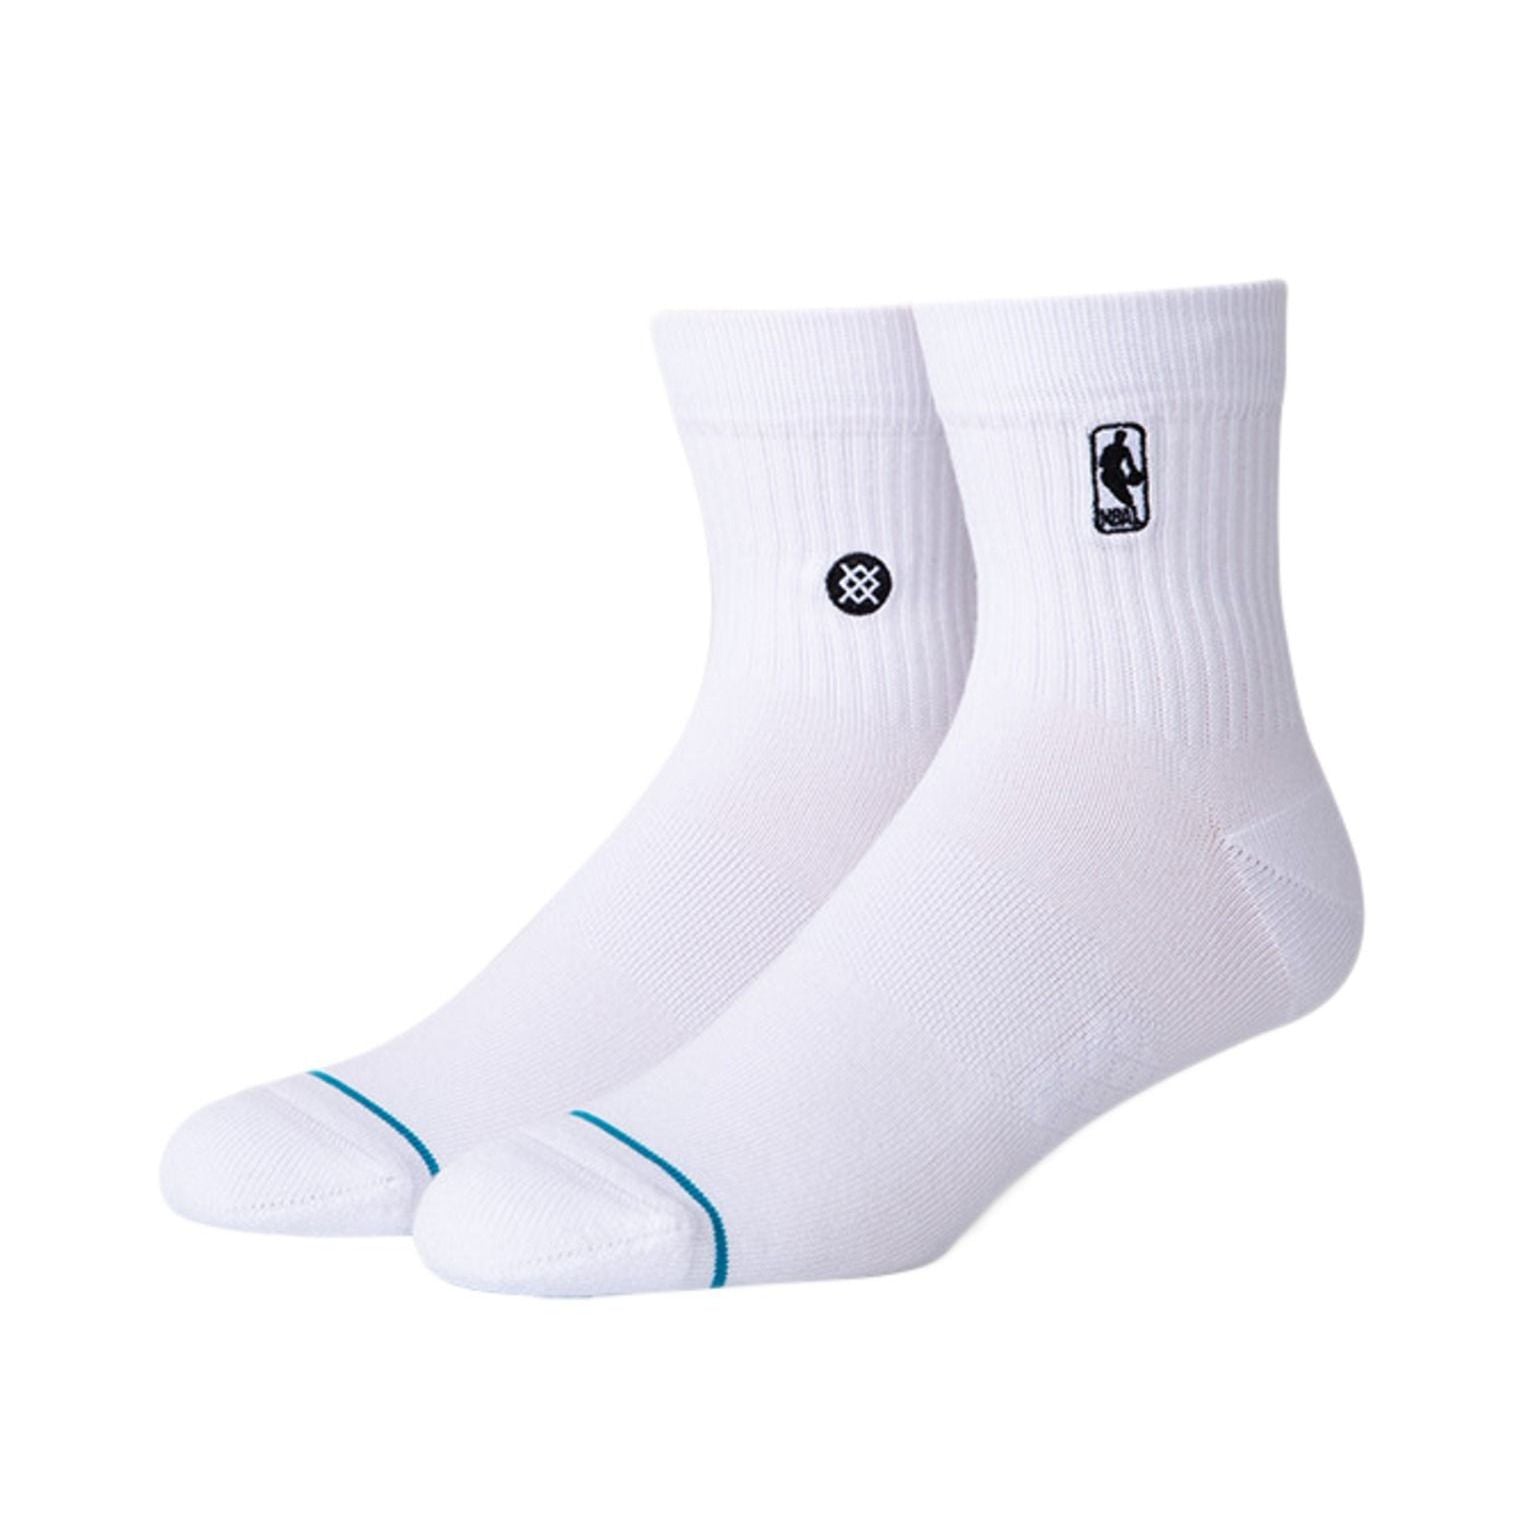 NBA Stance Socks 'Logoman' White